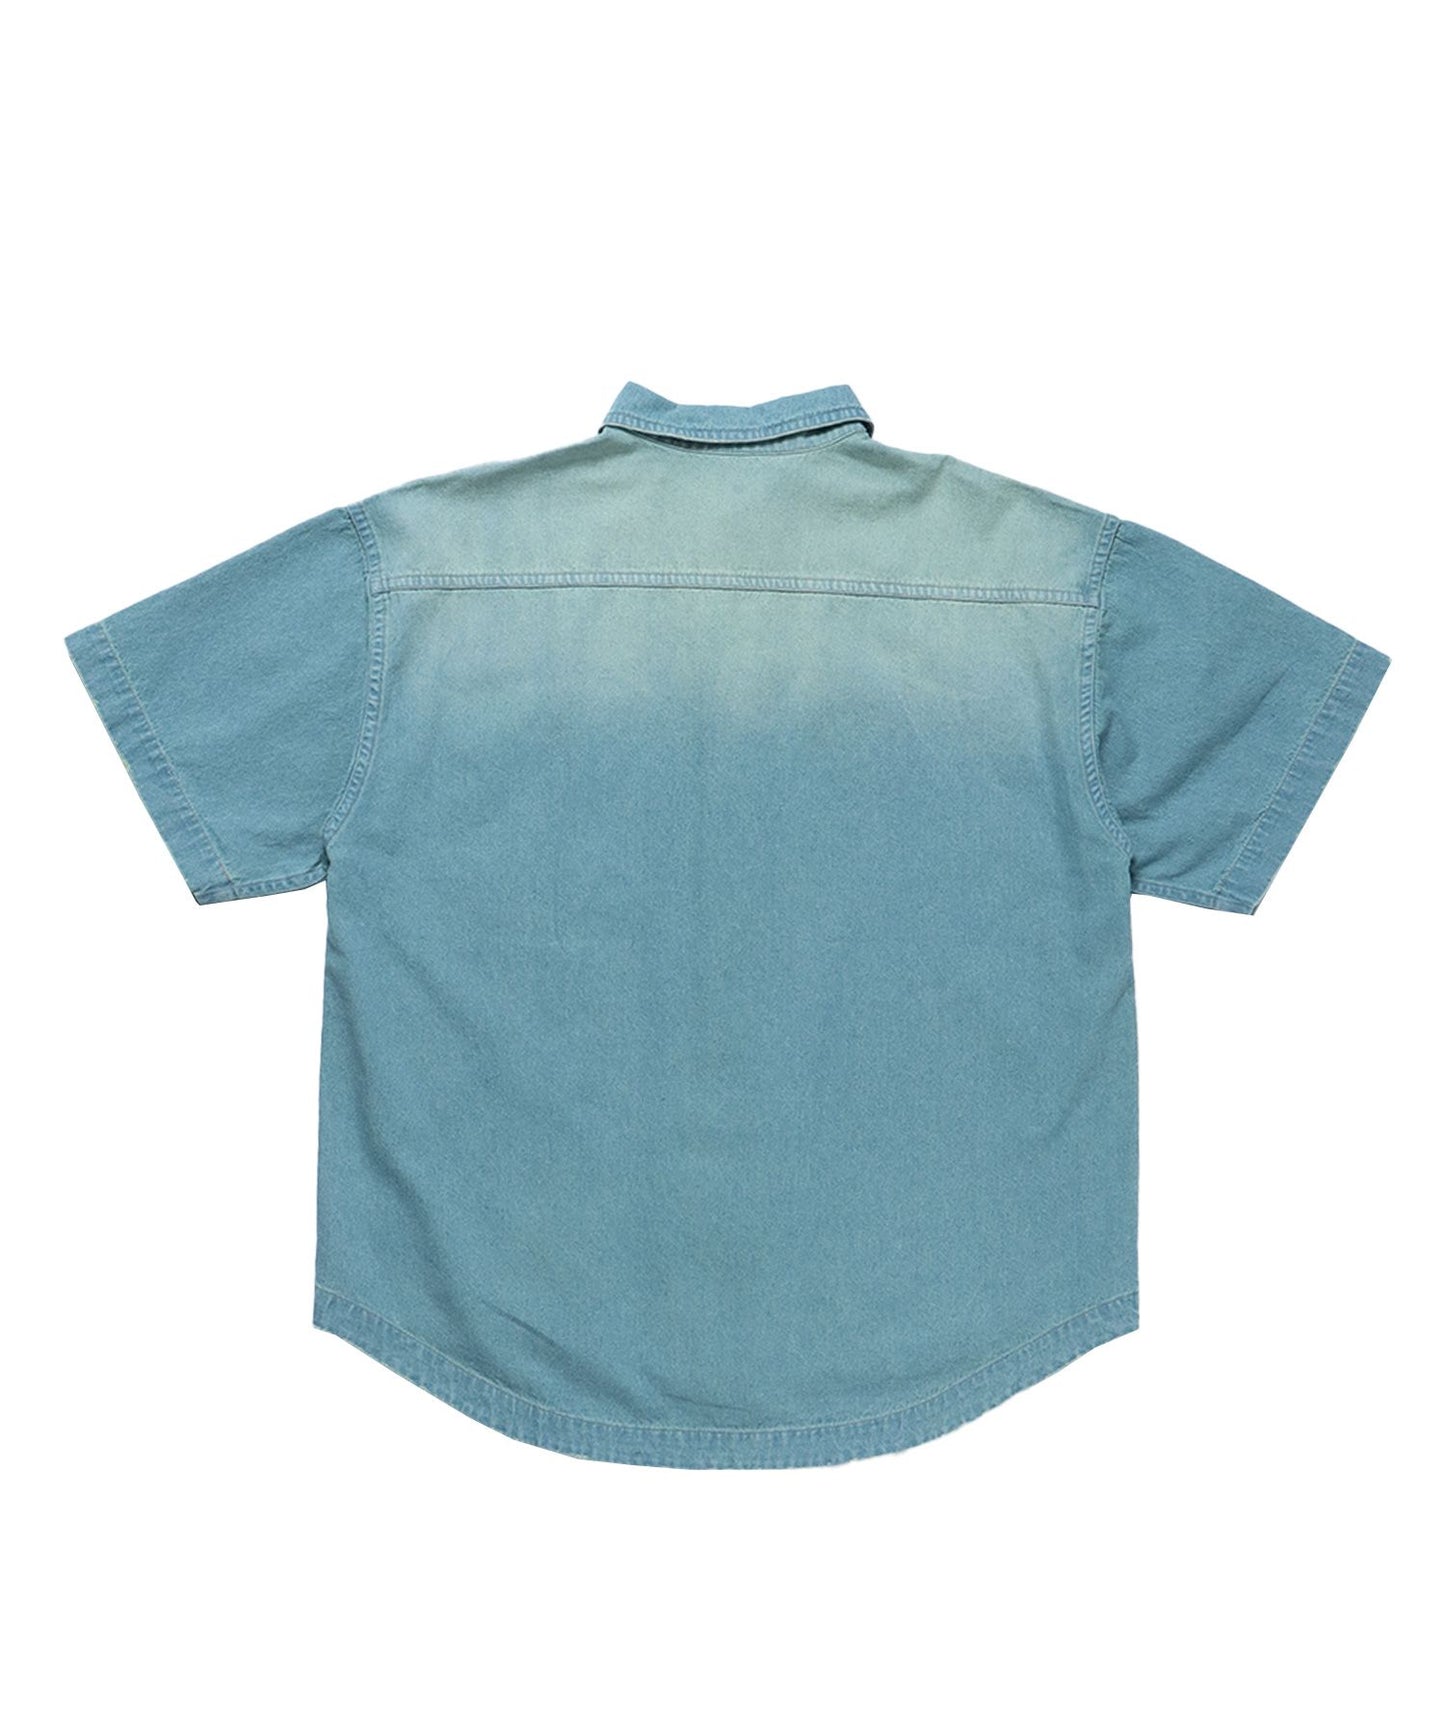 WASHED LIGHT SLUB DENIM S/S SHIRT / 半袖シャツ レギュラーカラー デニム ダメージ ワンポイント 刺繍 オーバーダイ フェード ブルー